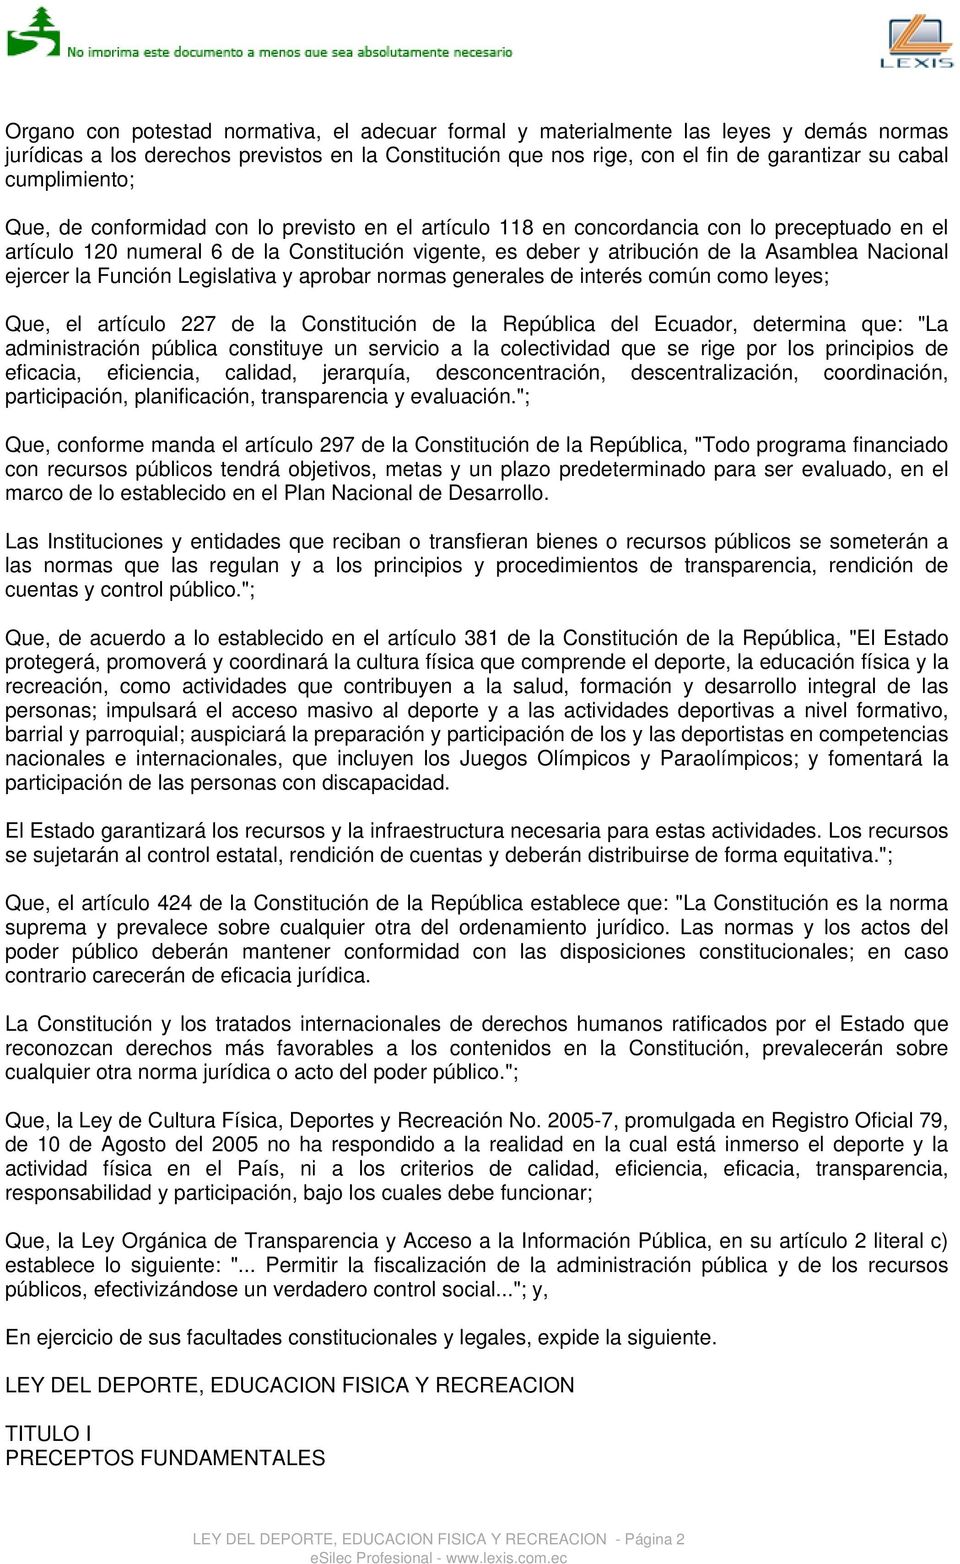 Nacional ejercer la Función Legislativa y aprobar normas generales de interés común como leyes; Que, el artículo 227 de la Constitución de la República del Ecuador, determina que: "La administración